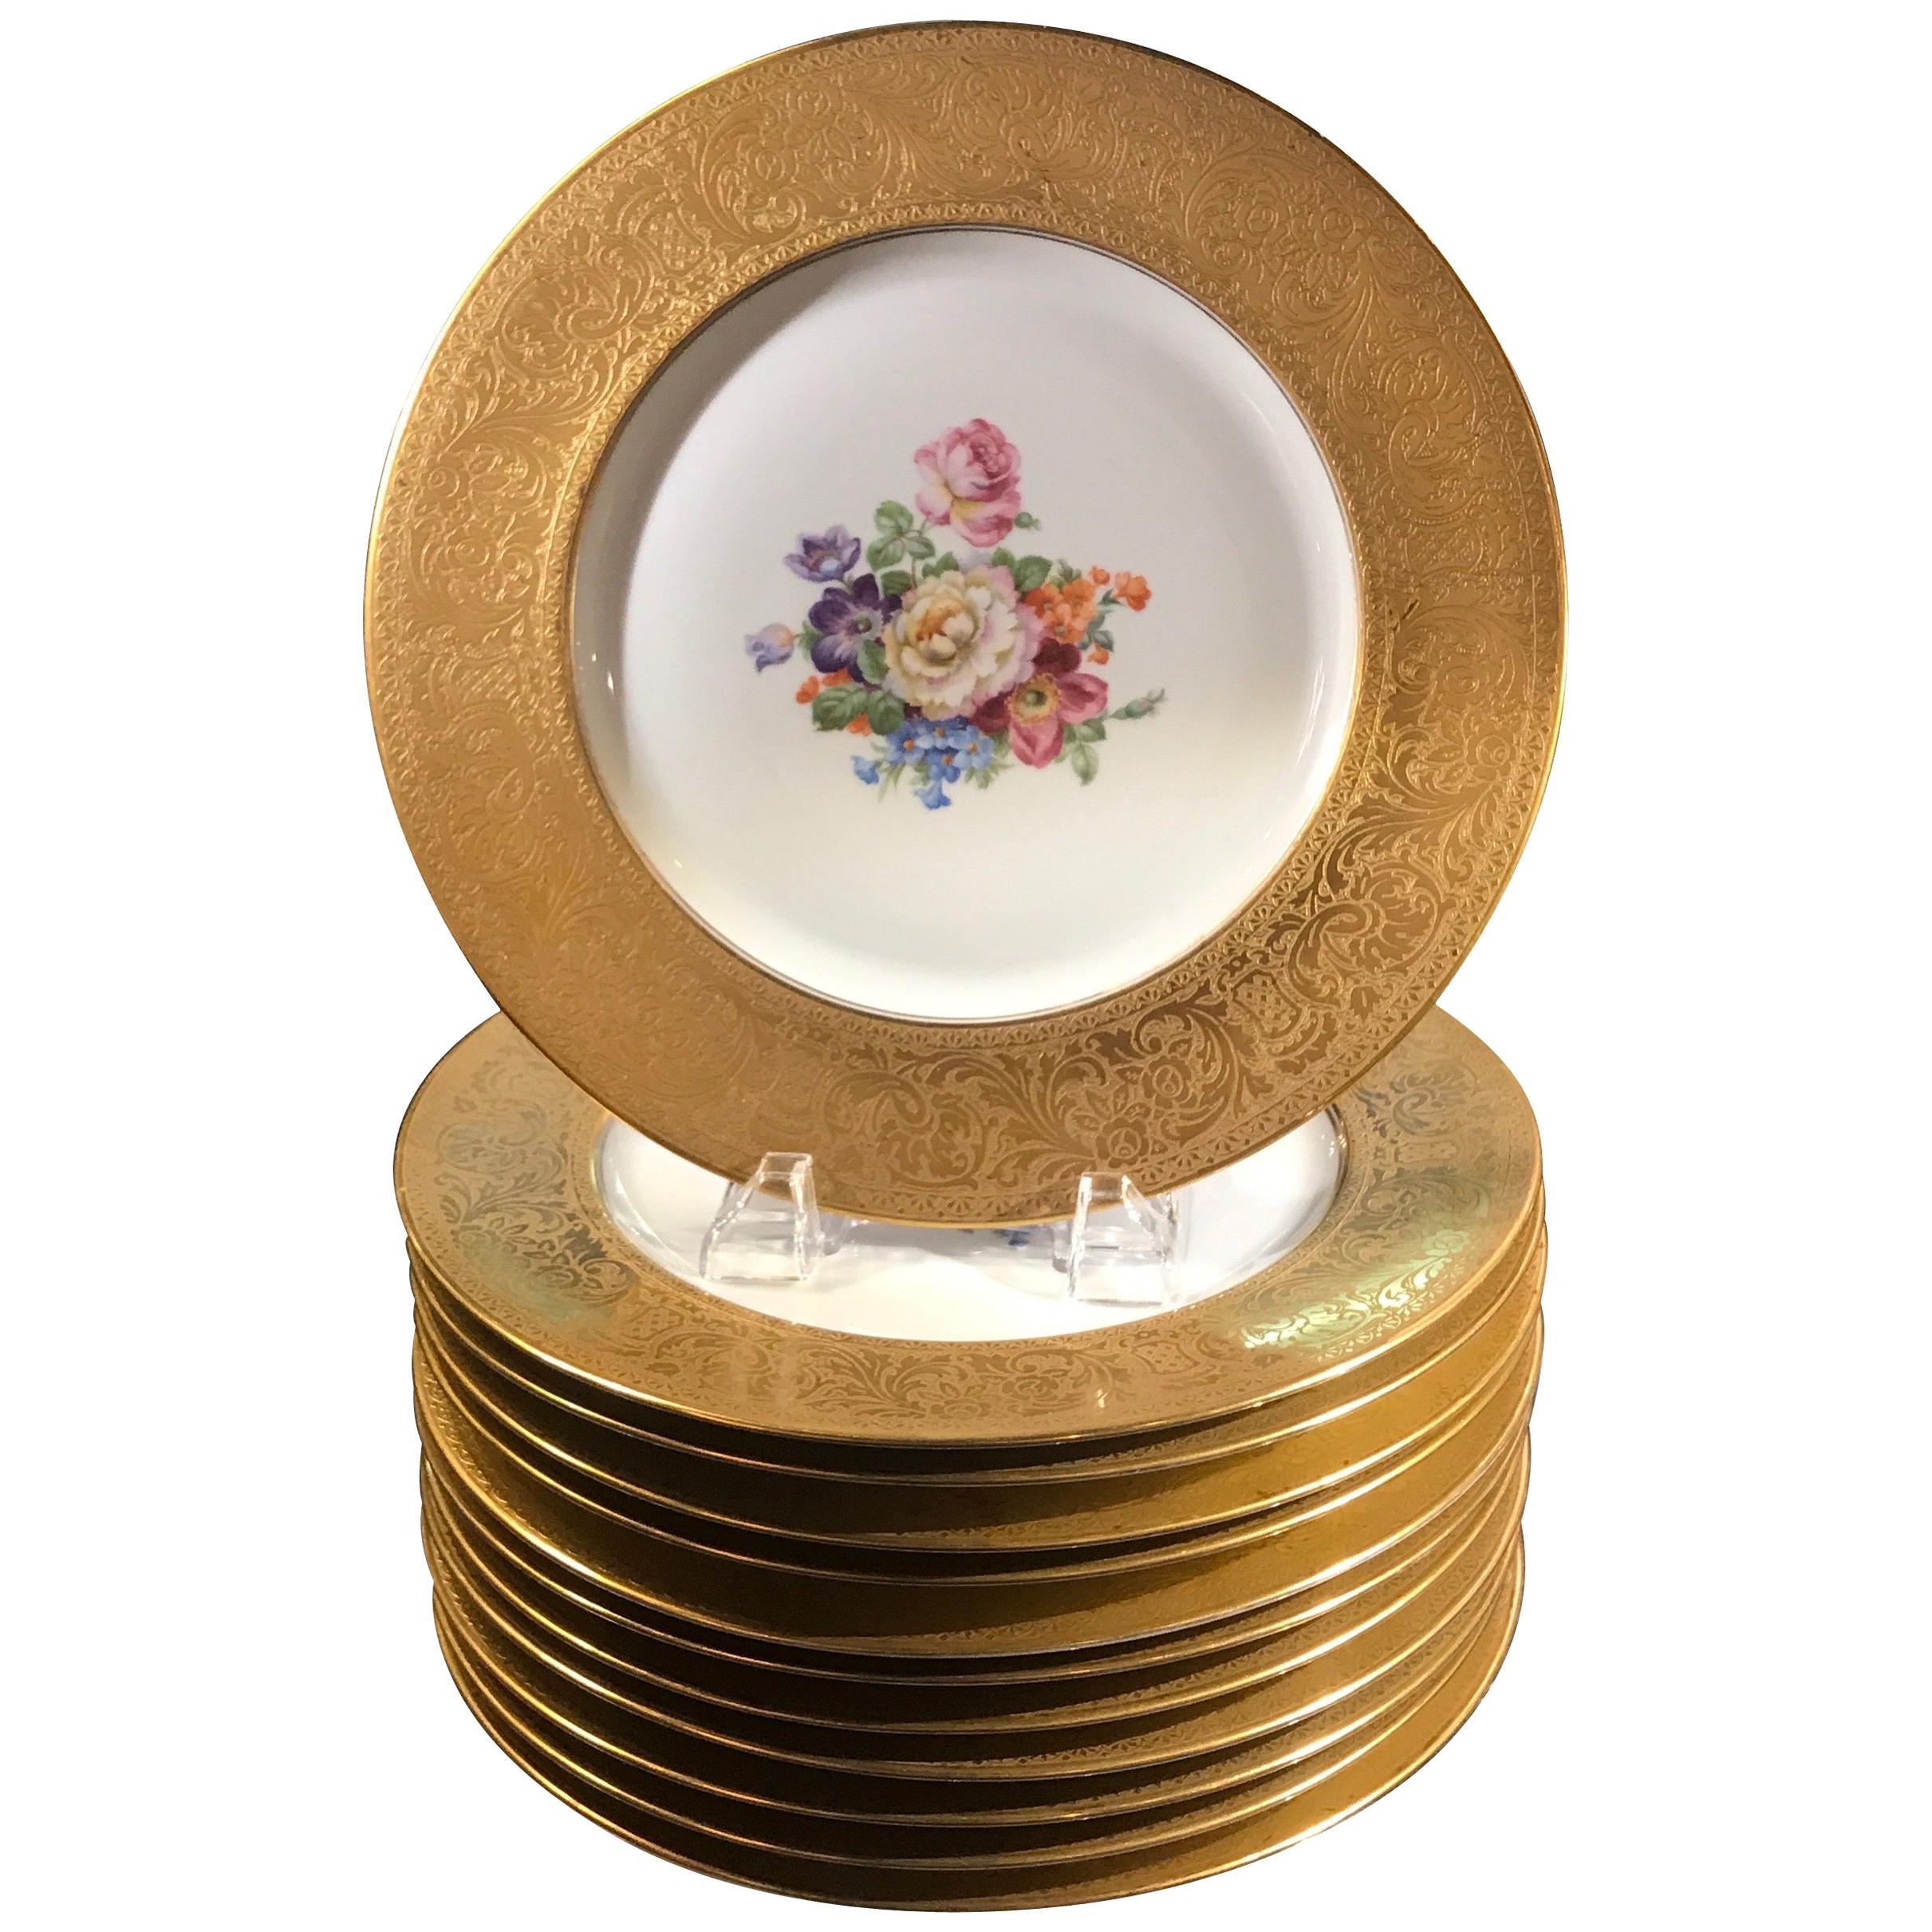 Set of Gold Encrusted Border Floral Dinner Service Plates